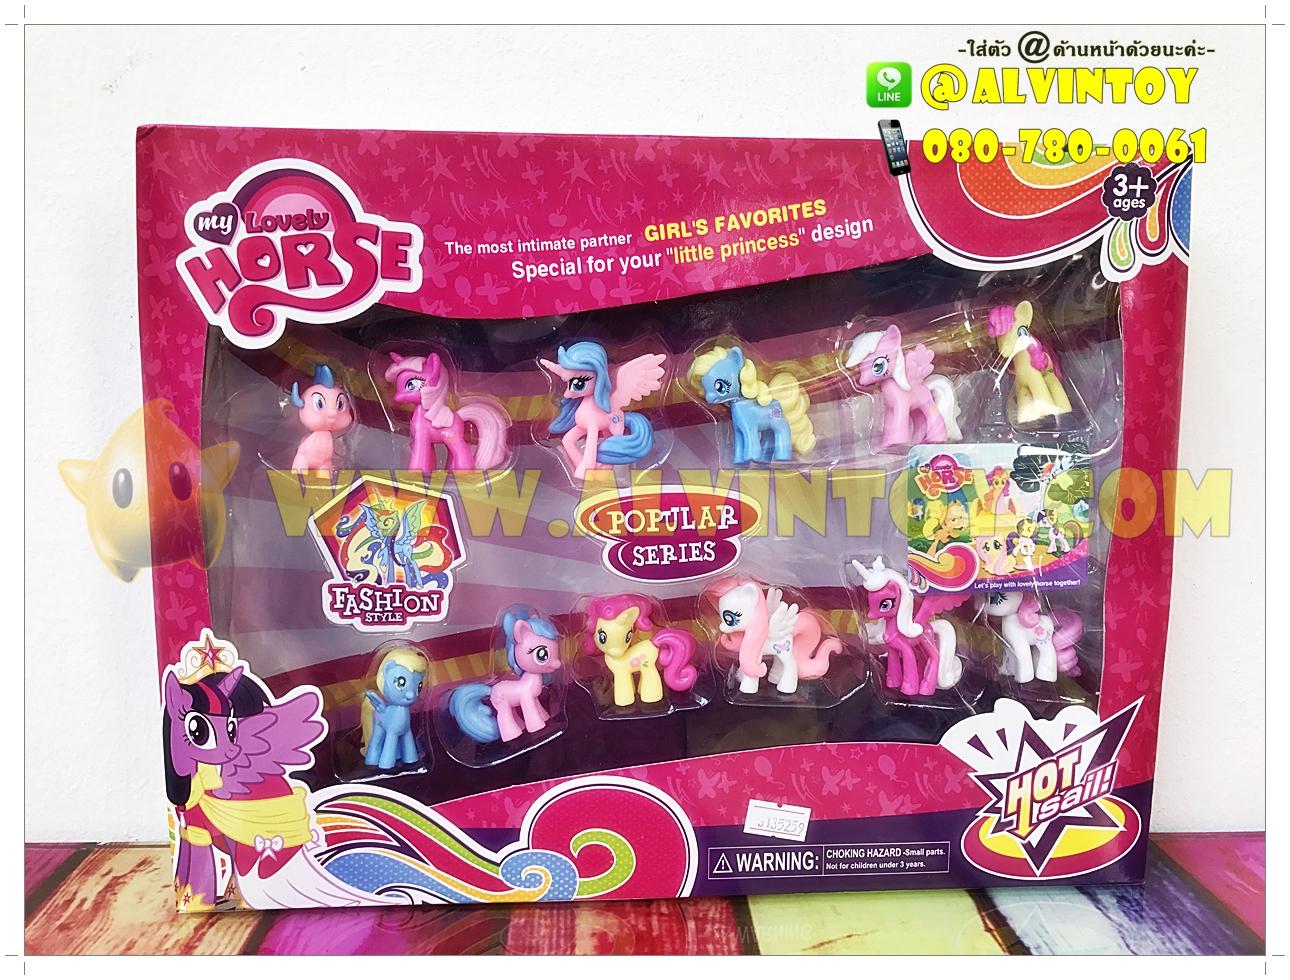 โมเดล My Little Pony - ชุดของเล่น ตุ๊กตามายลิตเติ้ลโพนี่ งานสวย สีสันสดใส มีชุดของเล่นหลากหลาย มาพร้อมของเล่นตกแต่ง กล่องสวยงาม